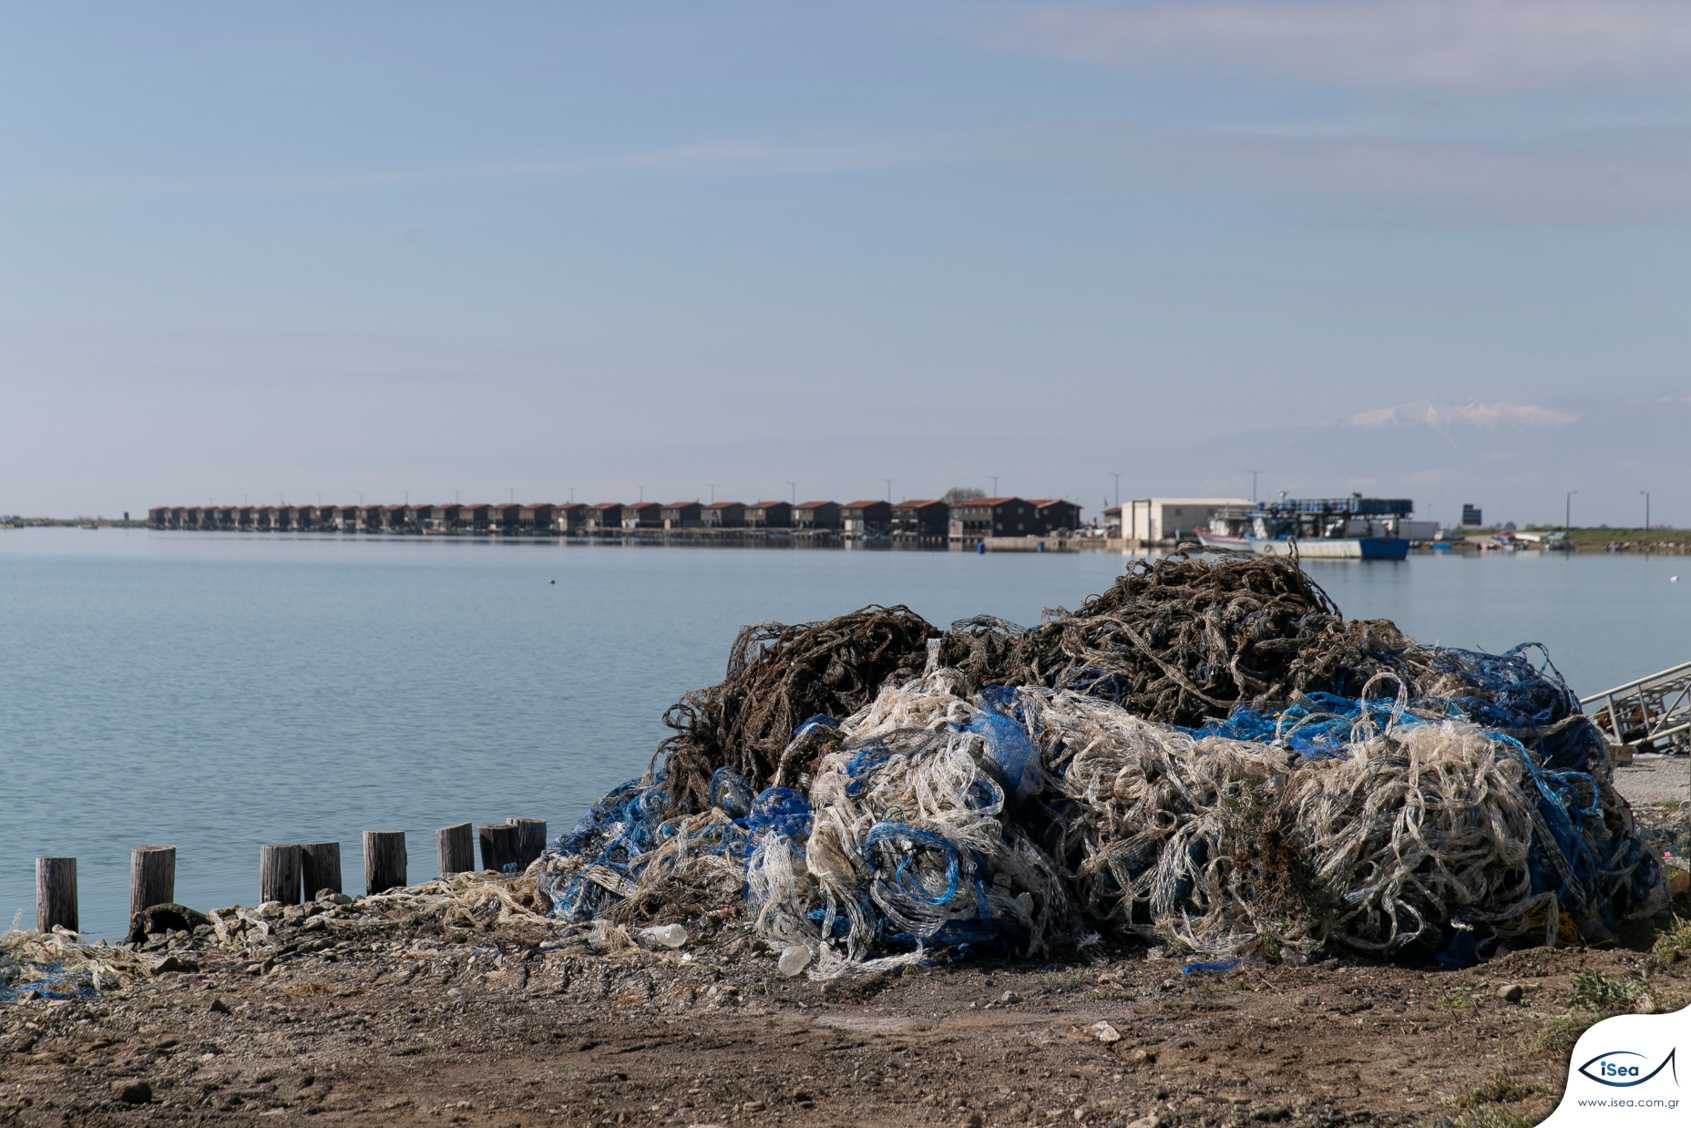 Θεσσαλονίκη: Για ανακύκλωση 10 τόνοι από διχτάκια μυδοκαλλιέργειας στη Χαλάστρα – Δείτε τις εικόνες